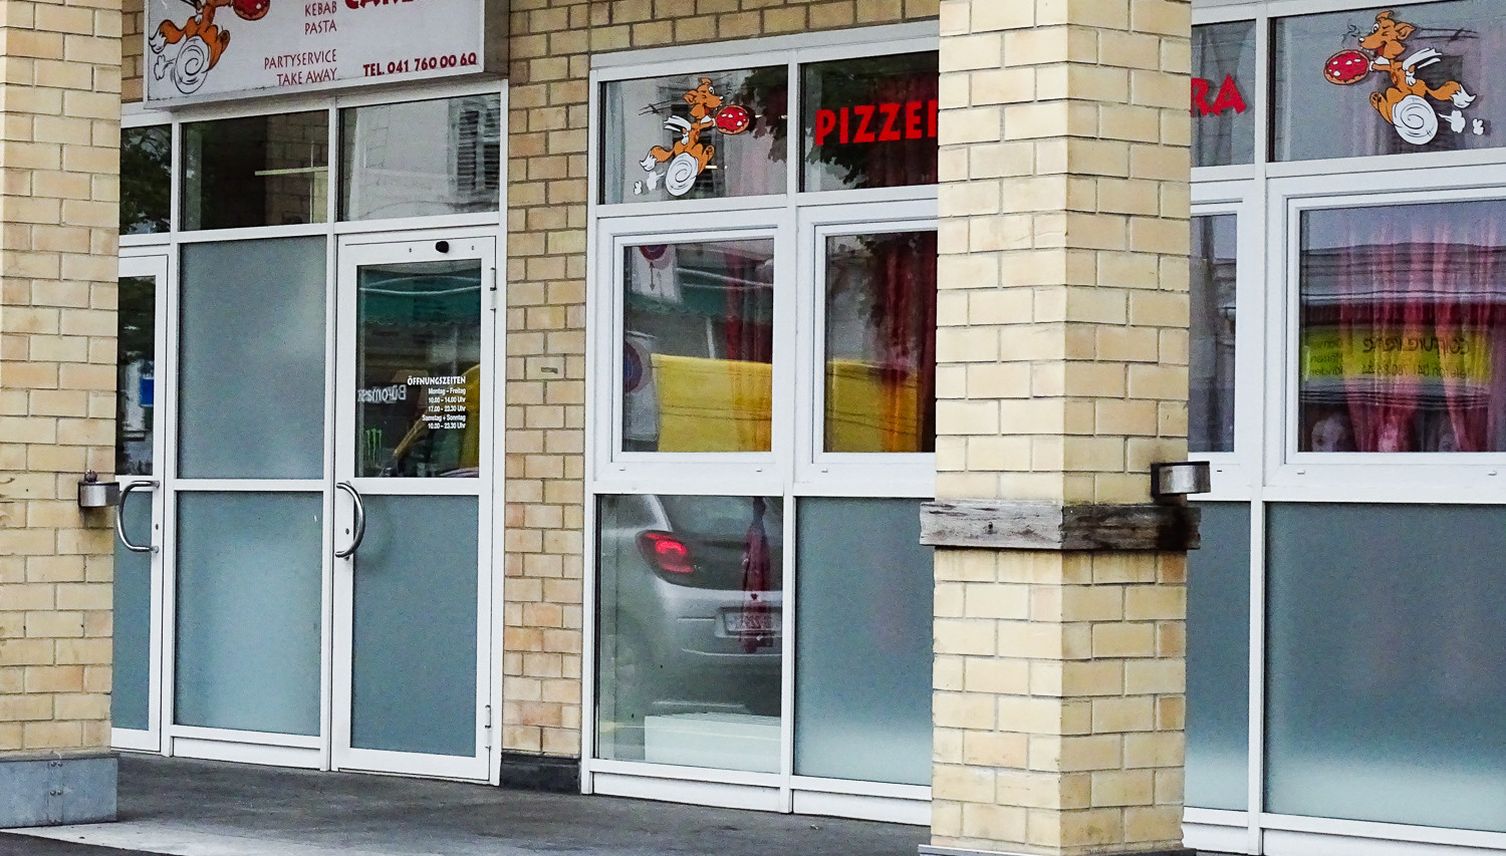 Wird die Pizzeria Carerra bald durch einen Asiaten ersetzt?